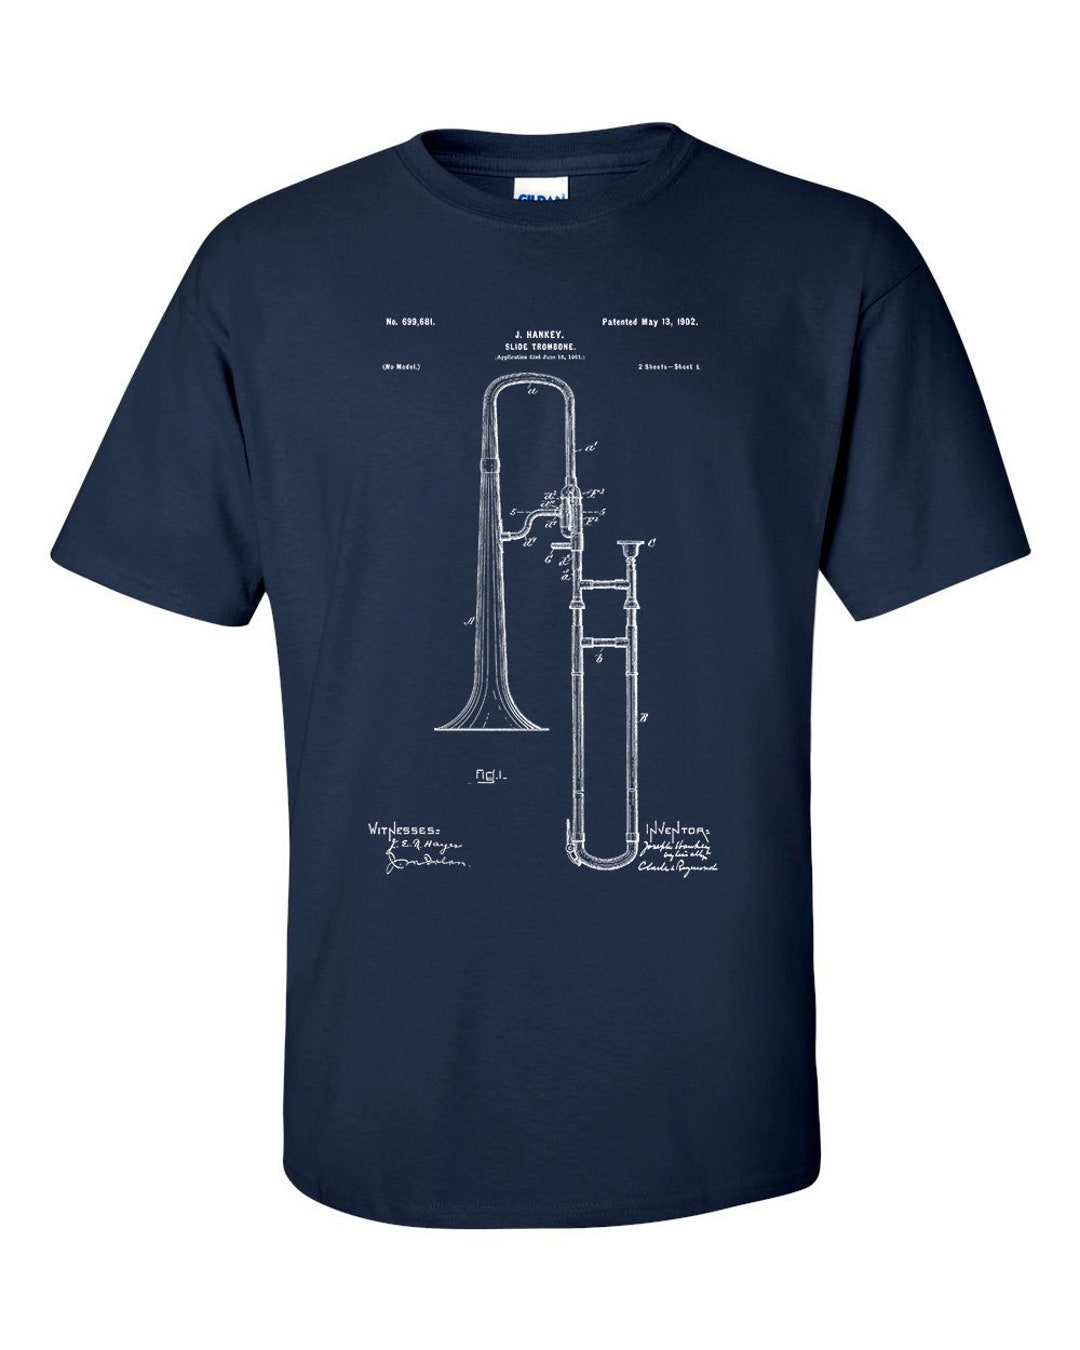 Slide Trombone Patent Jazz Band Blueprint T-shirt - Etsy UK